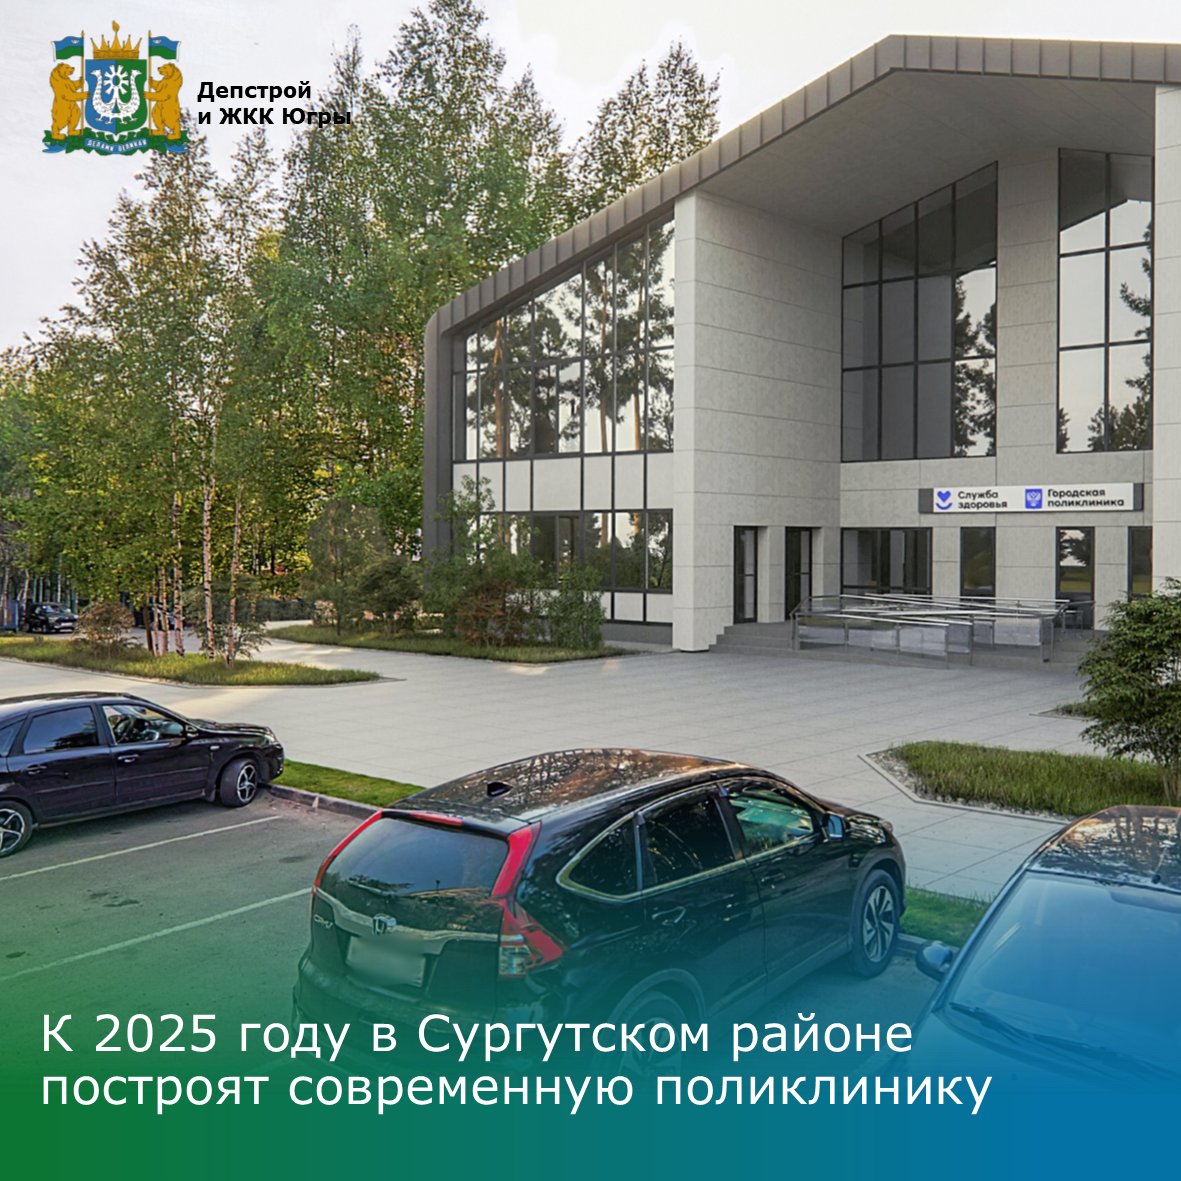 К 2025 году в Сургутском районе построят современную поликлинику